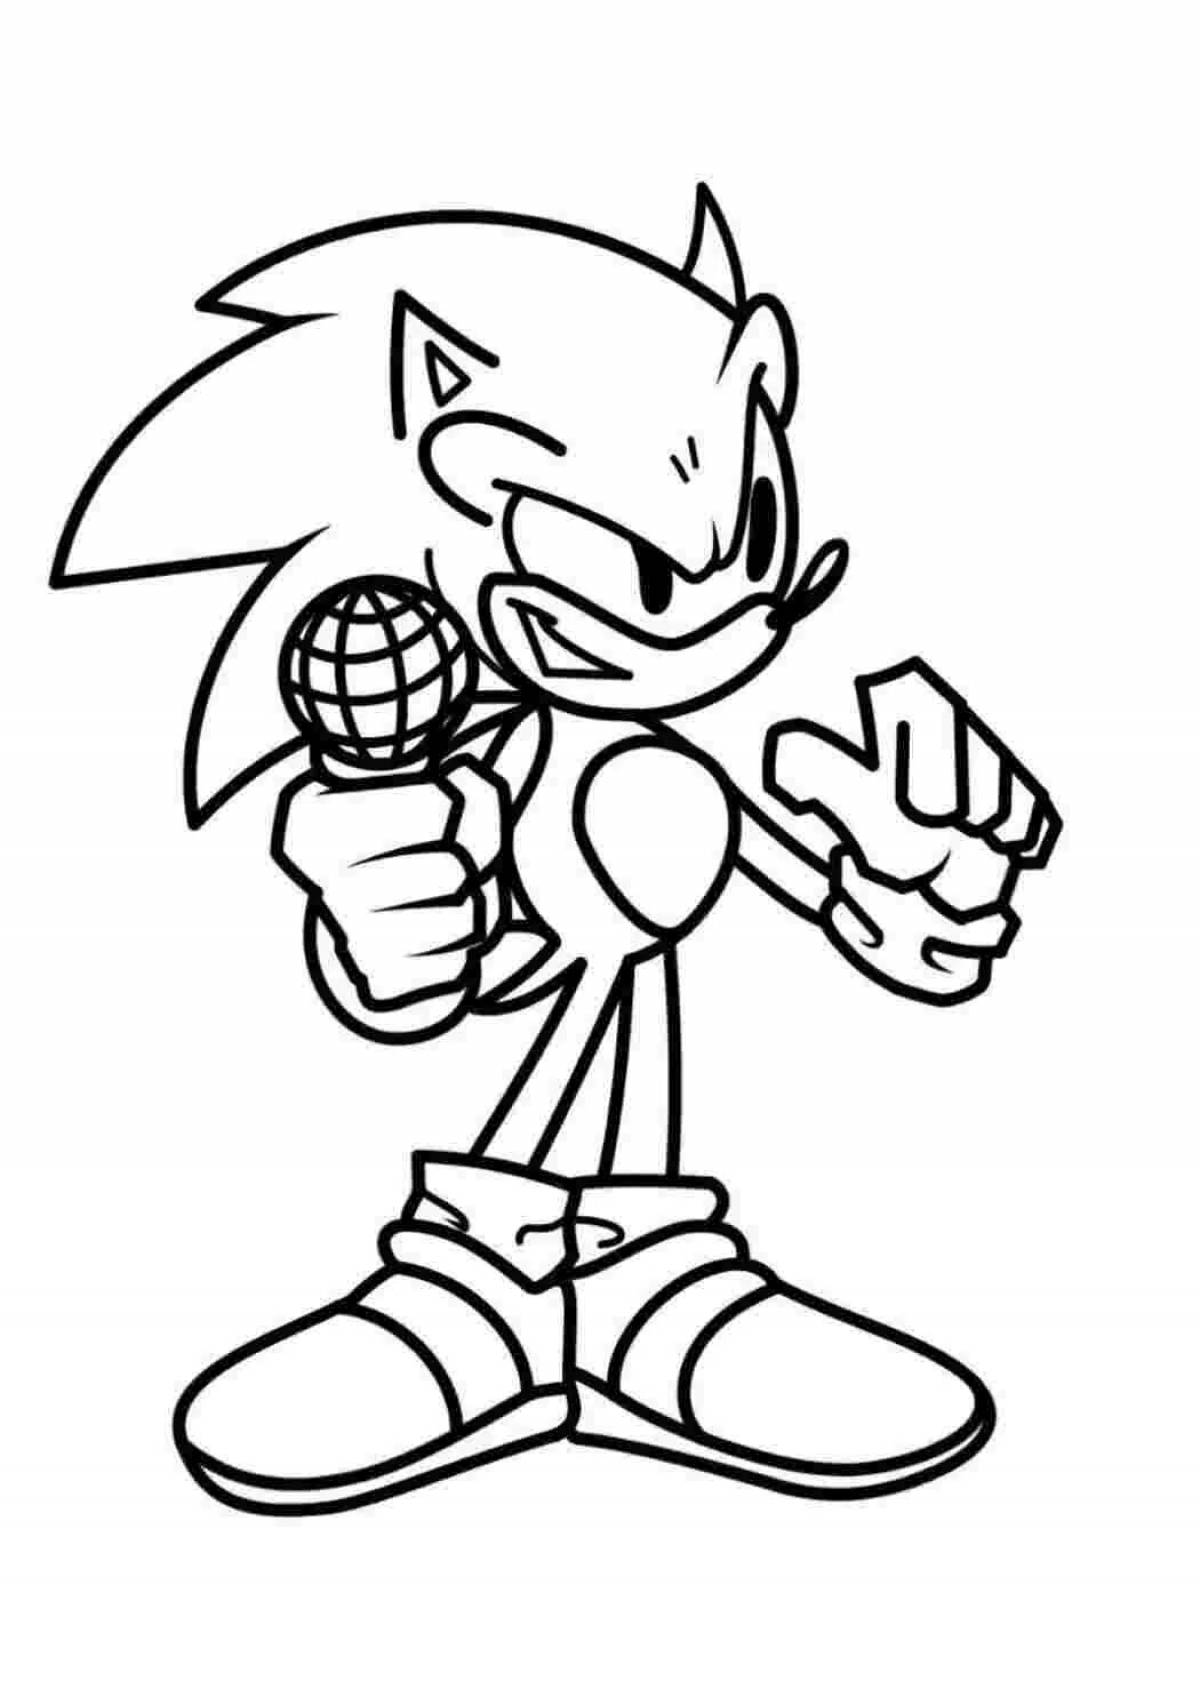 Sonic shredder #2